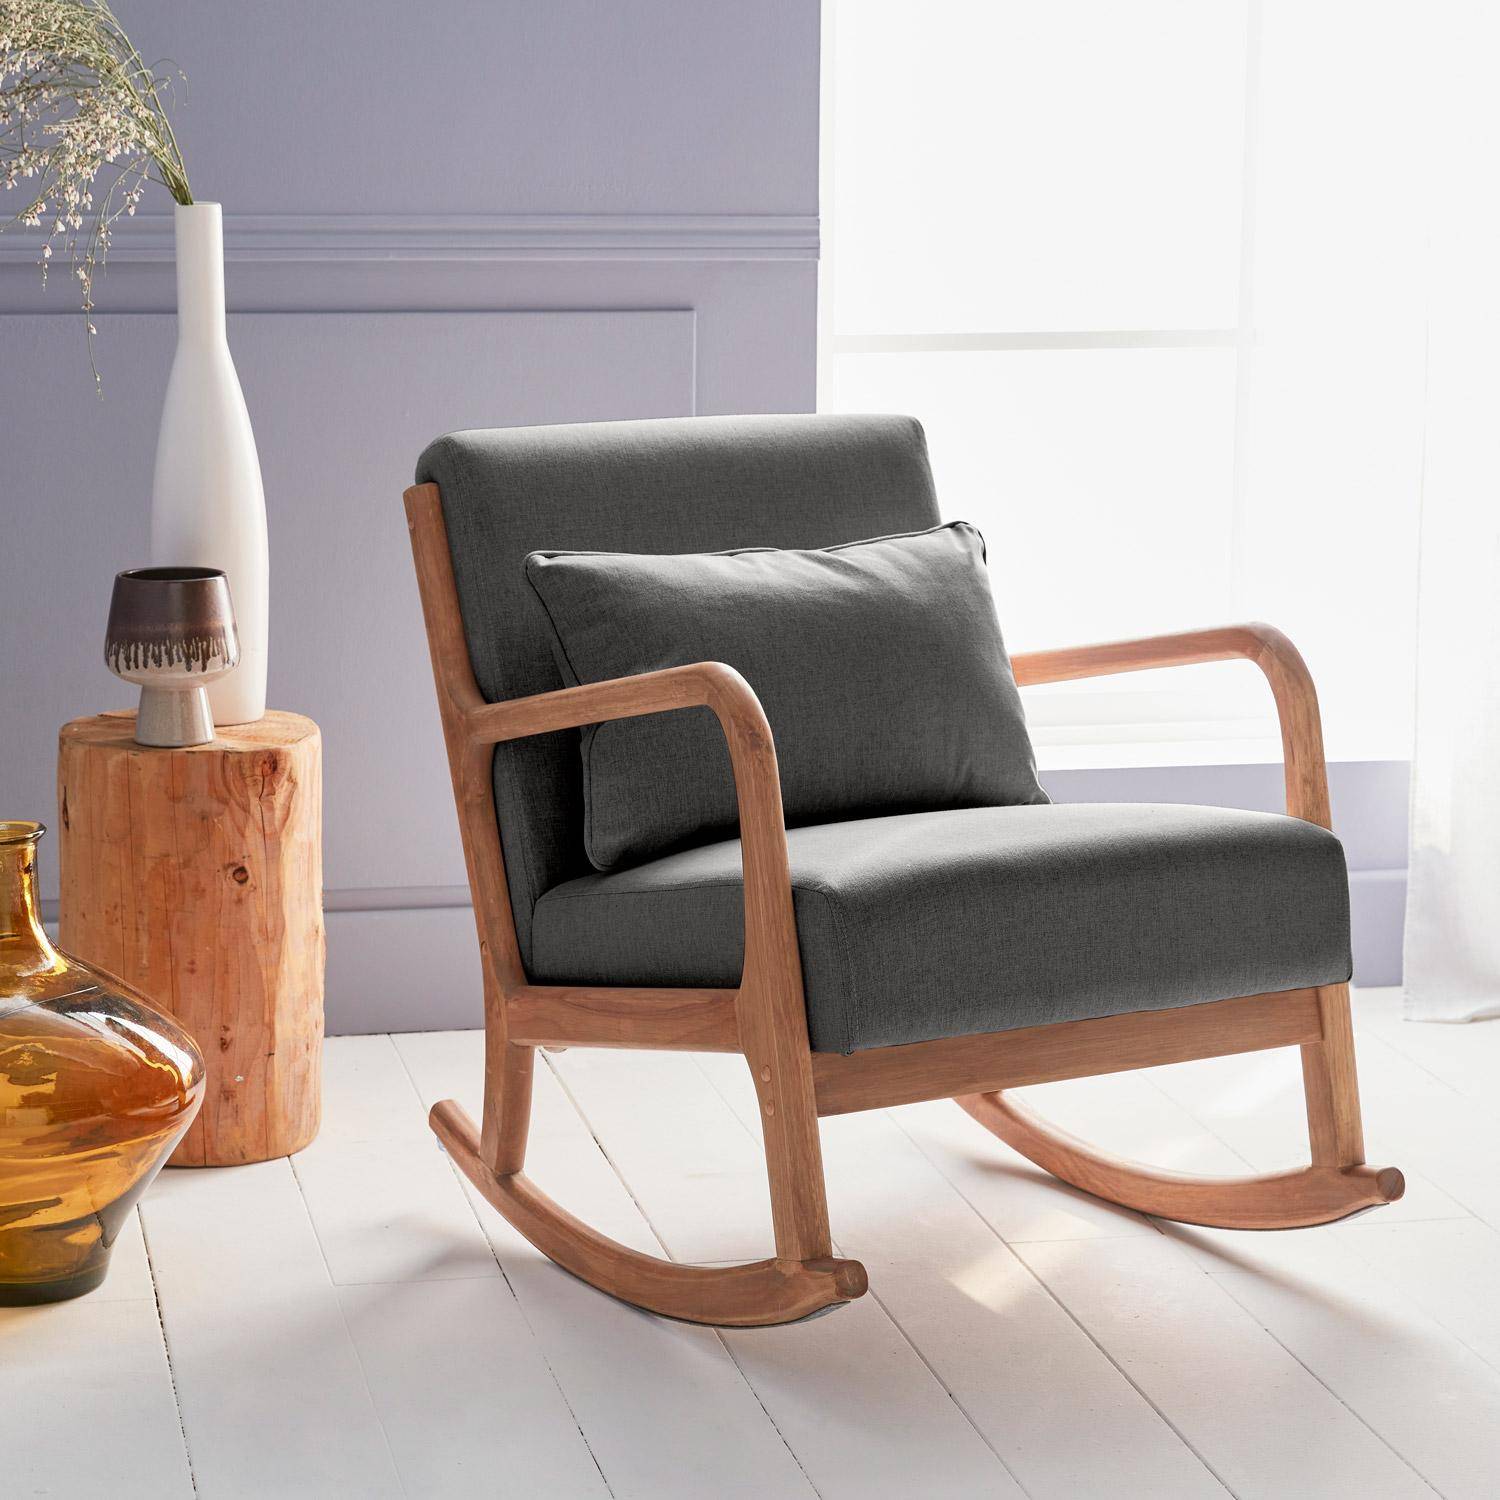 Fauteuil à bascule design en bois et tissu, 1 place, rocking chair scandinave  Photo1